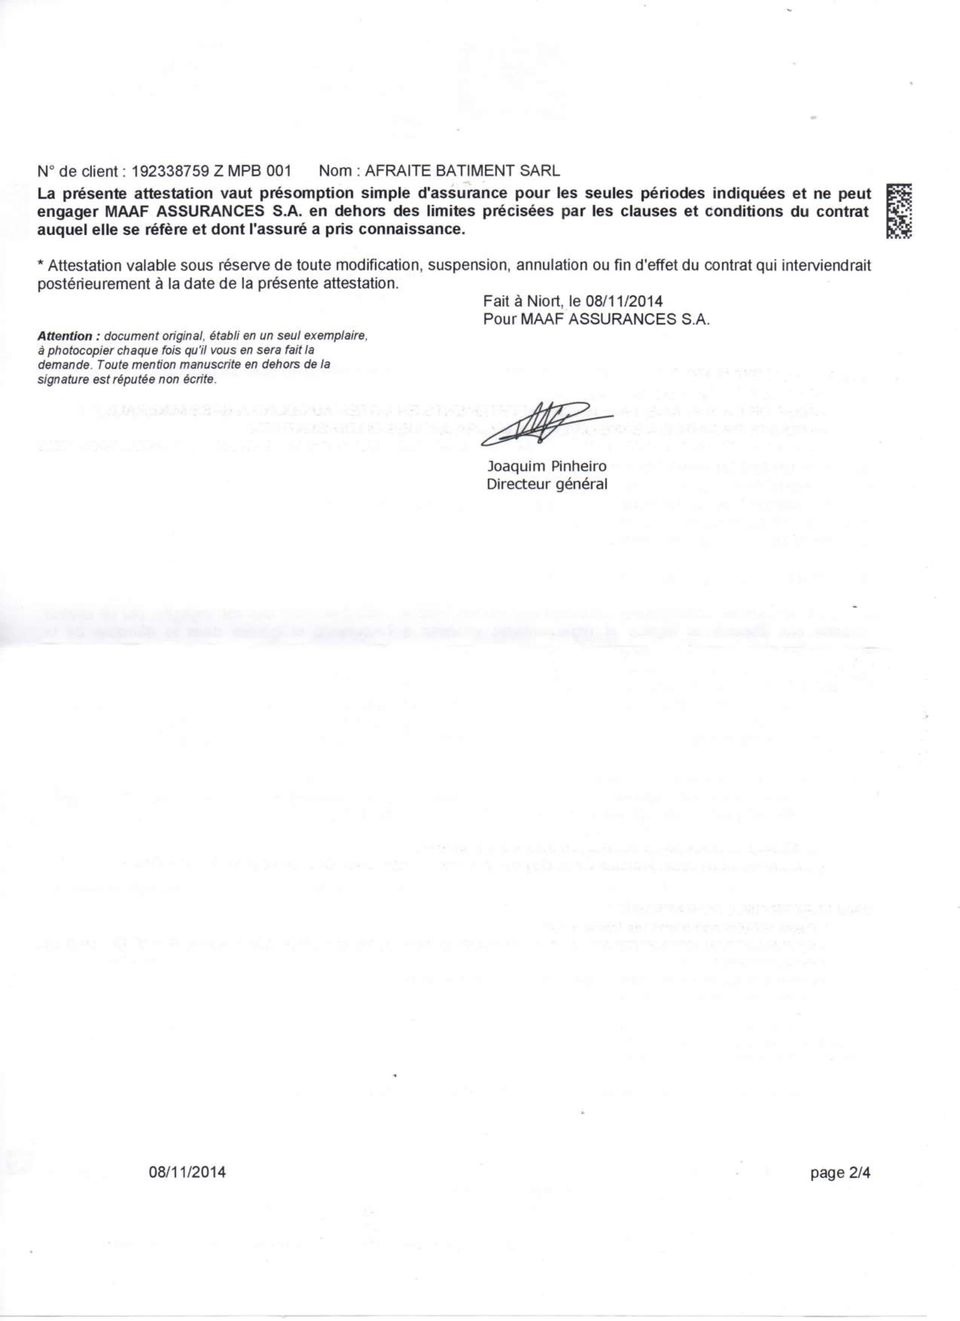 Fait à Niort, le 08/11/2014 Pour MAAF ASSURANCES S.A. Attention : document original, établi en un seul exemplaire, à photocopier chaque fois qu'il vous en sera fait la demande.